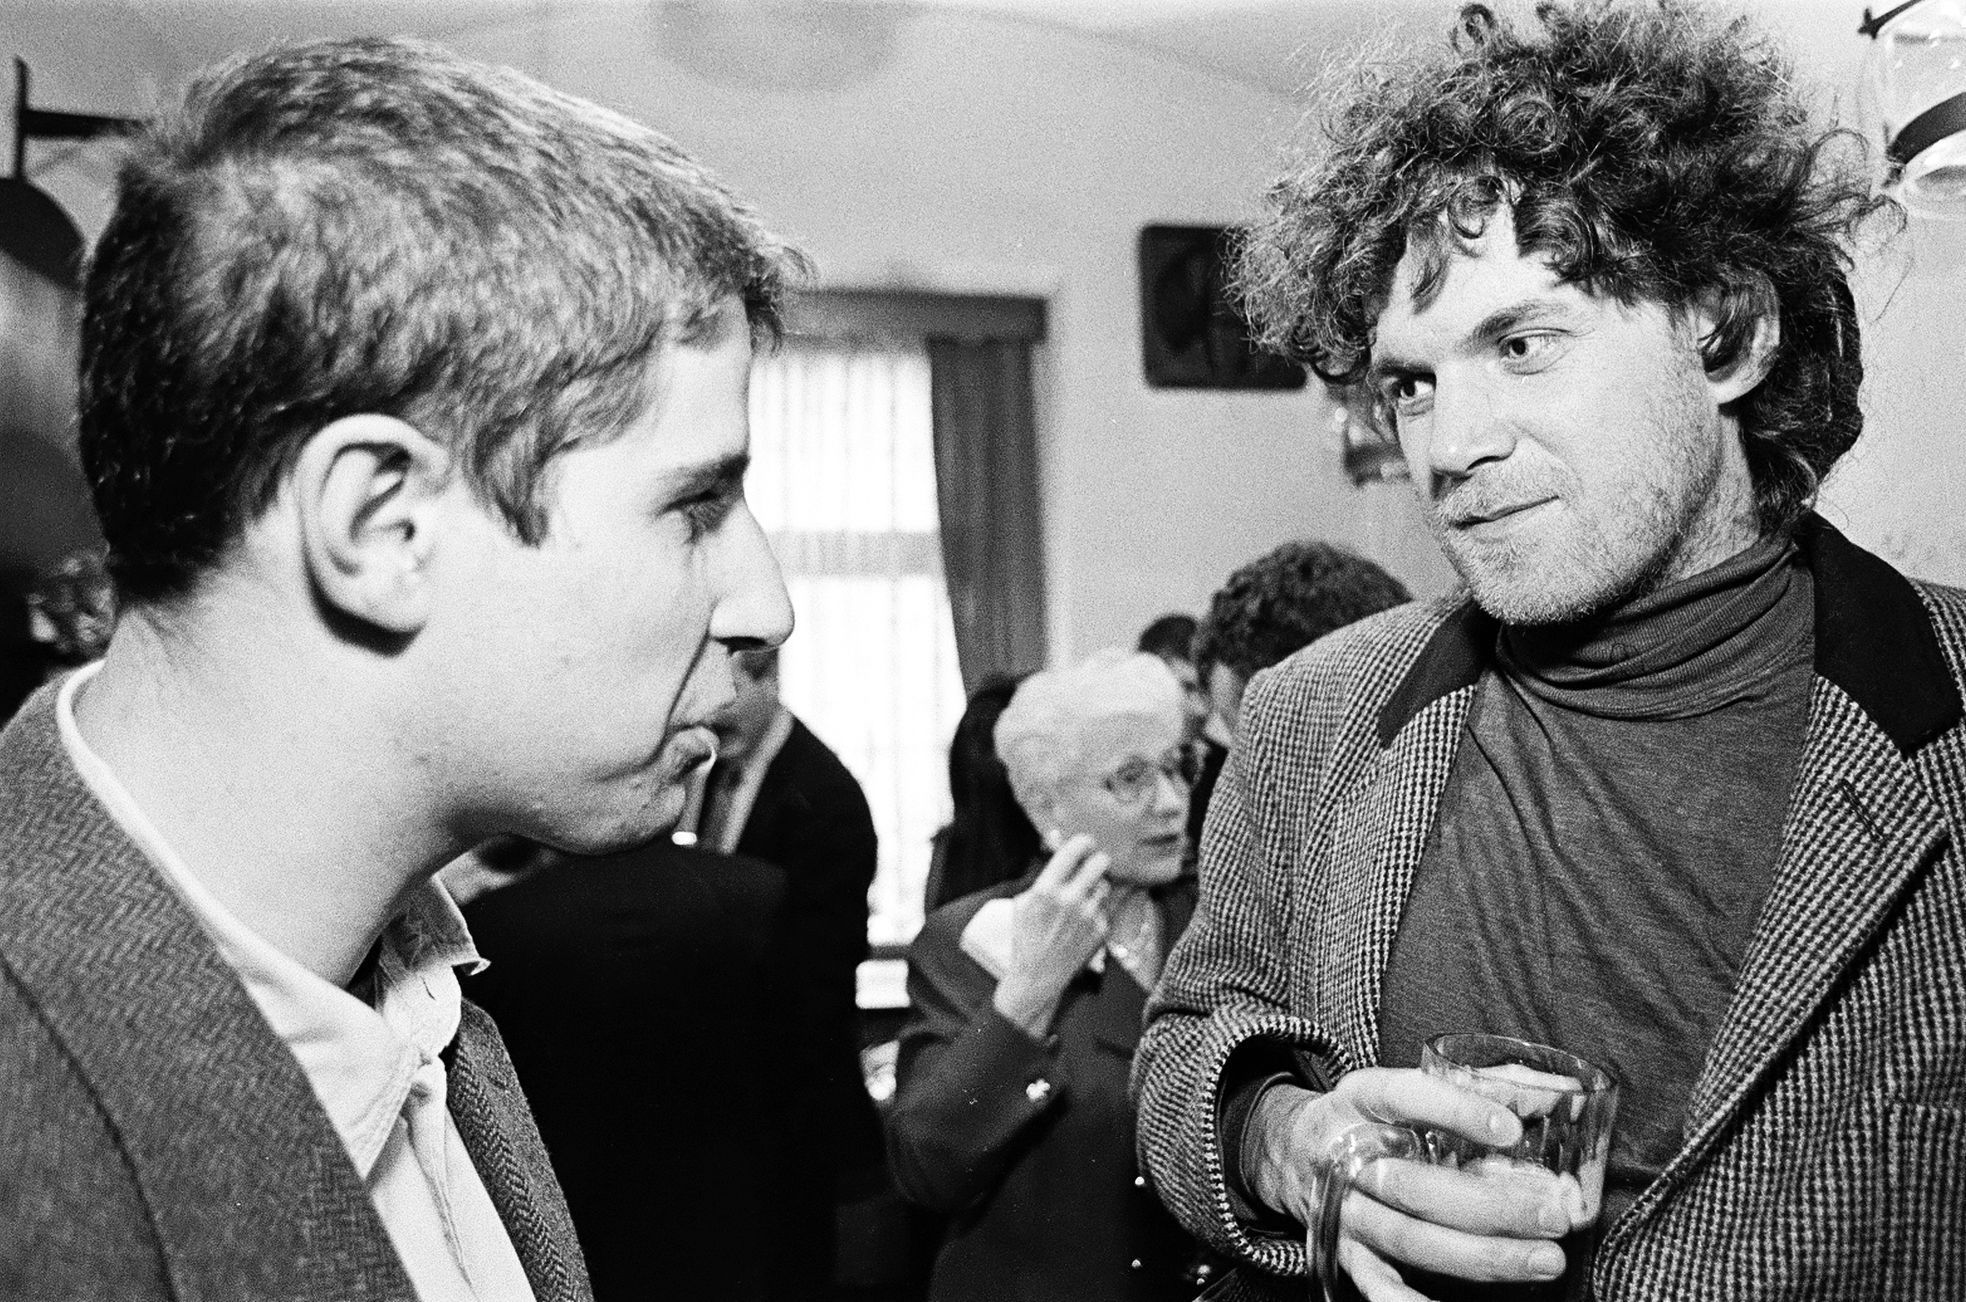 Tehdejší šéfredaktor Respektu Vladimír Mlynář (vlevo) při rozmluvě s Markem Švehlou, který je dnes zástupcem šéfredaktora. (1995)